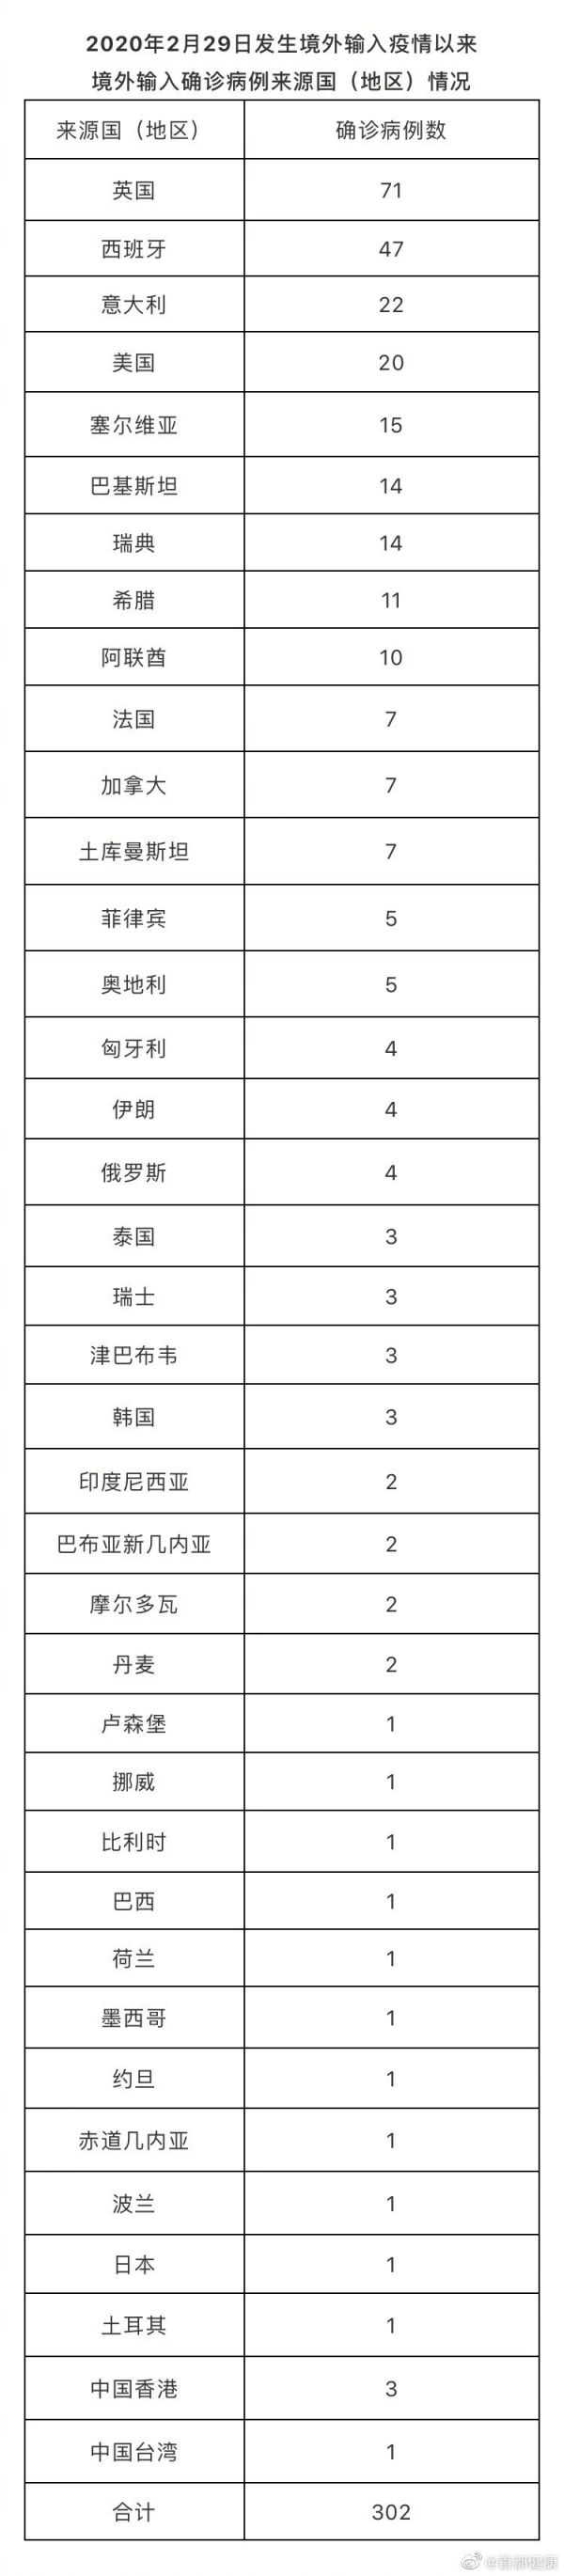 11月13日北京无新增新冠肺炎确诊病例 治愈出院5例